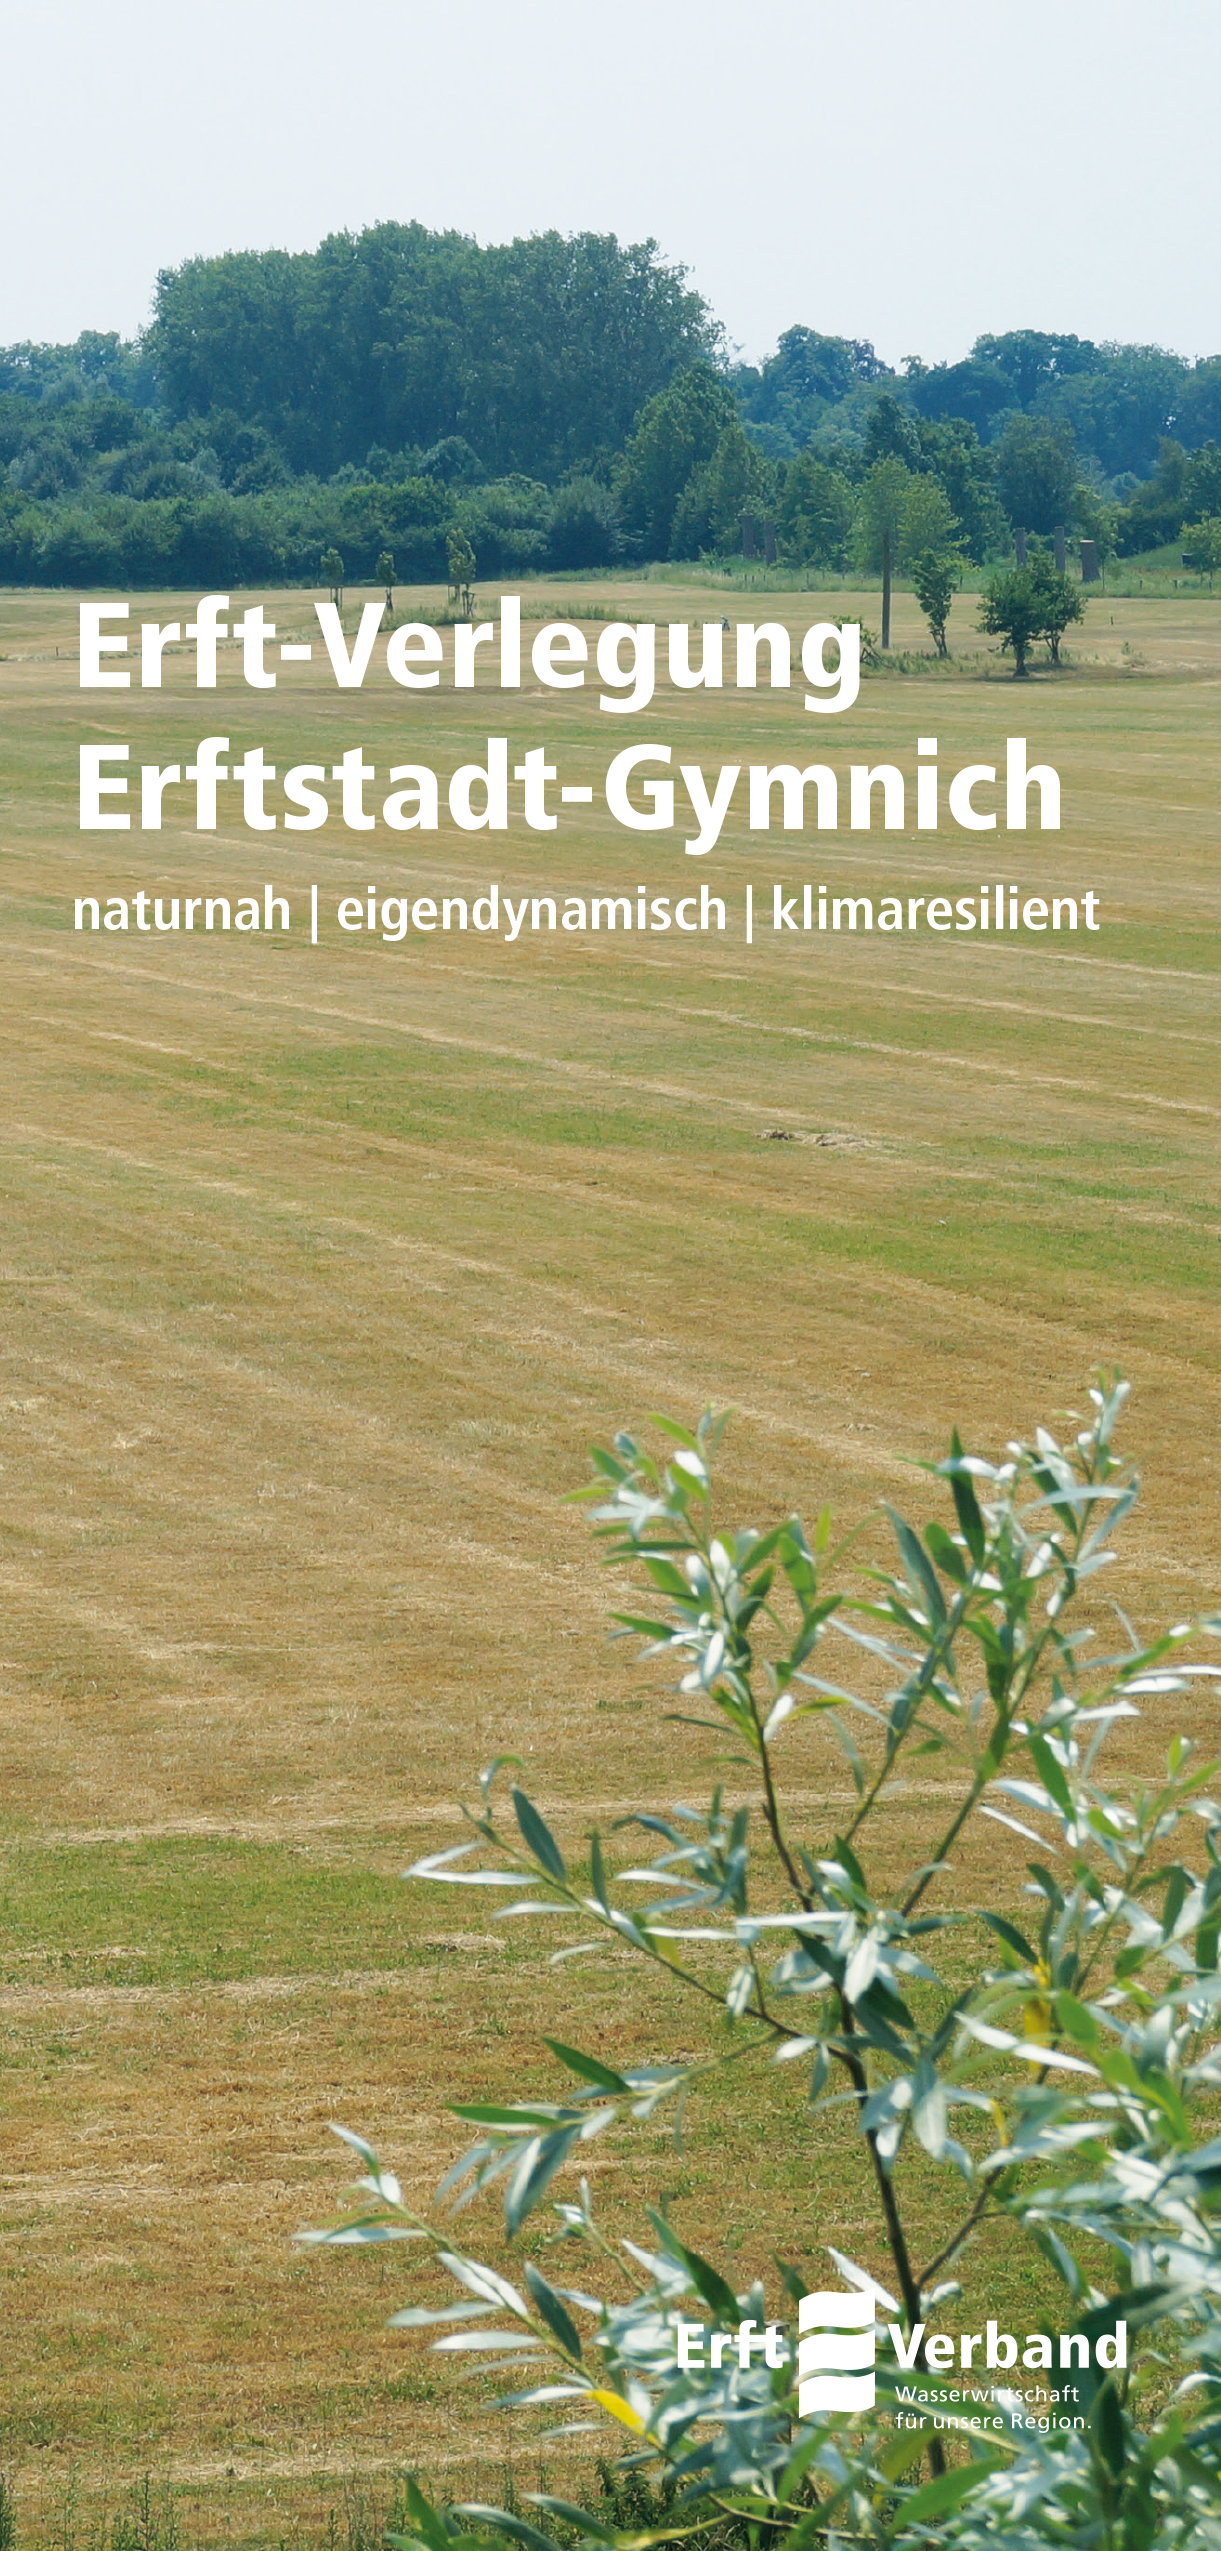 Flyer Erft-Verlegung Erftstadt-Gymnich